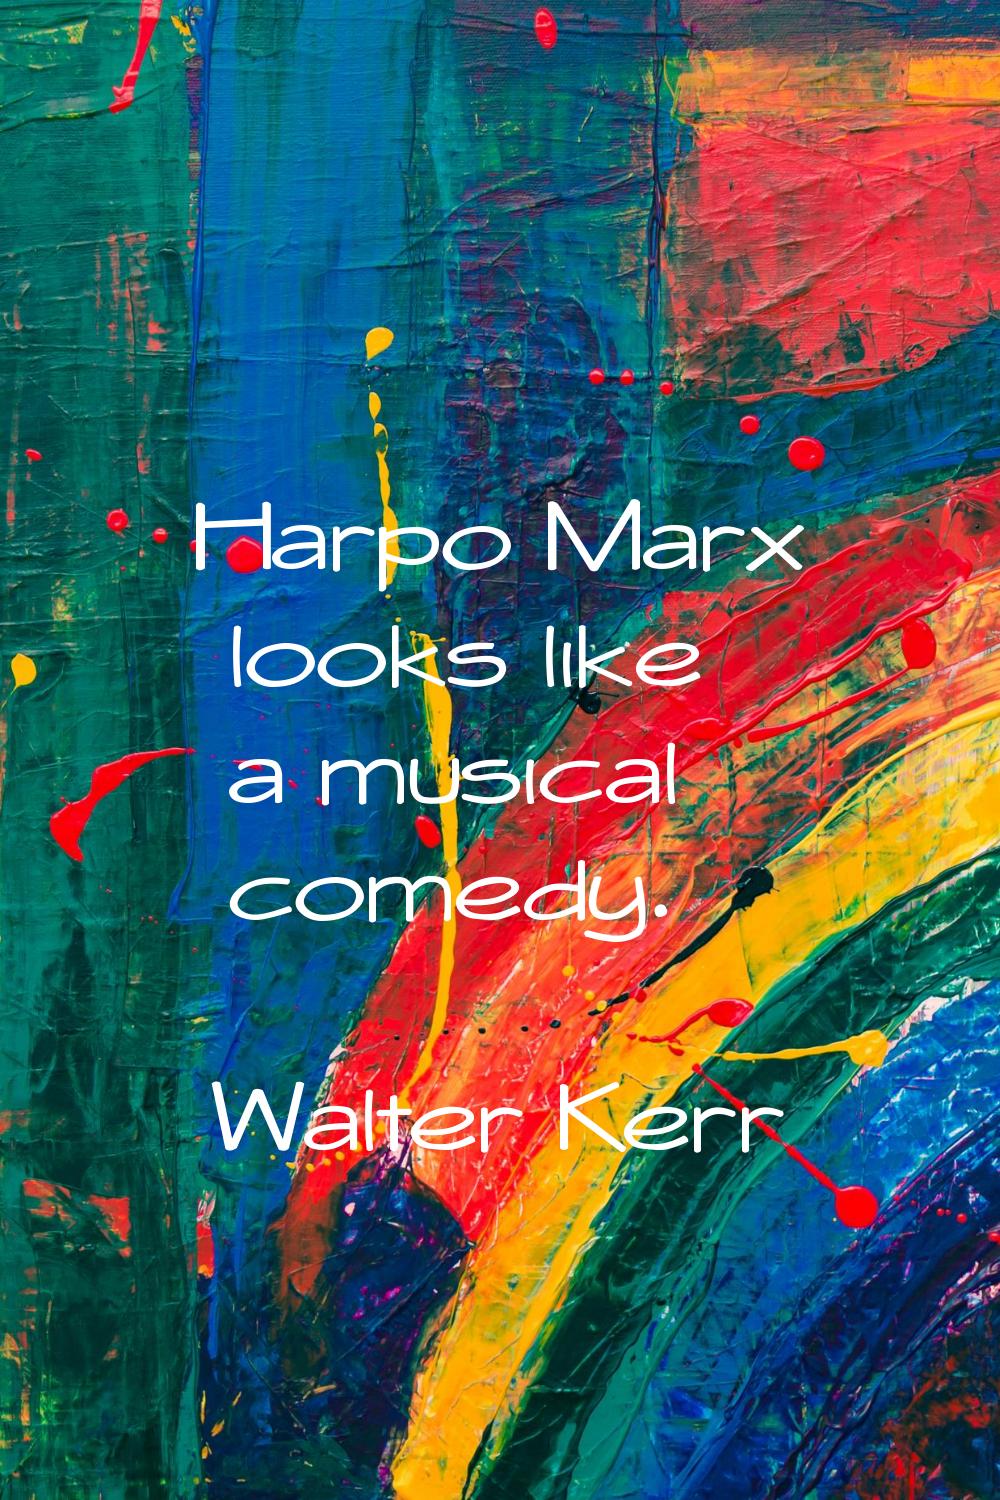 Harpo Marx looks like a musical comedy.